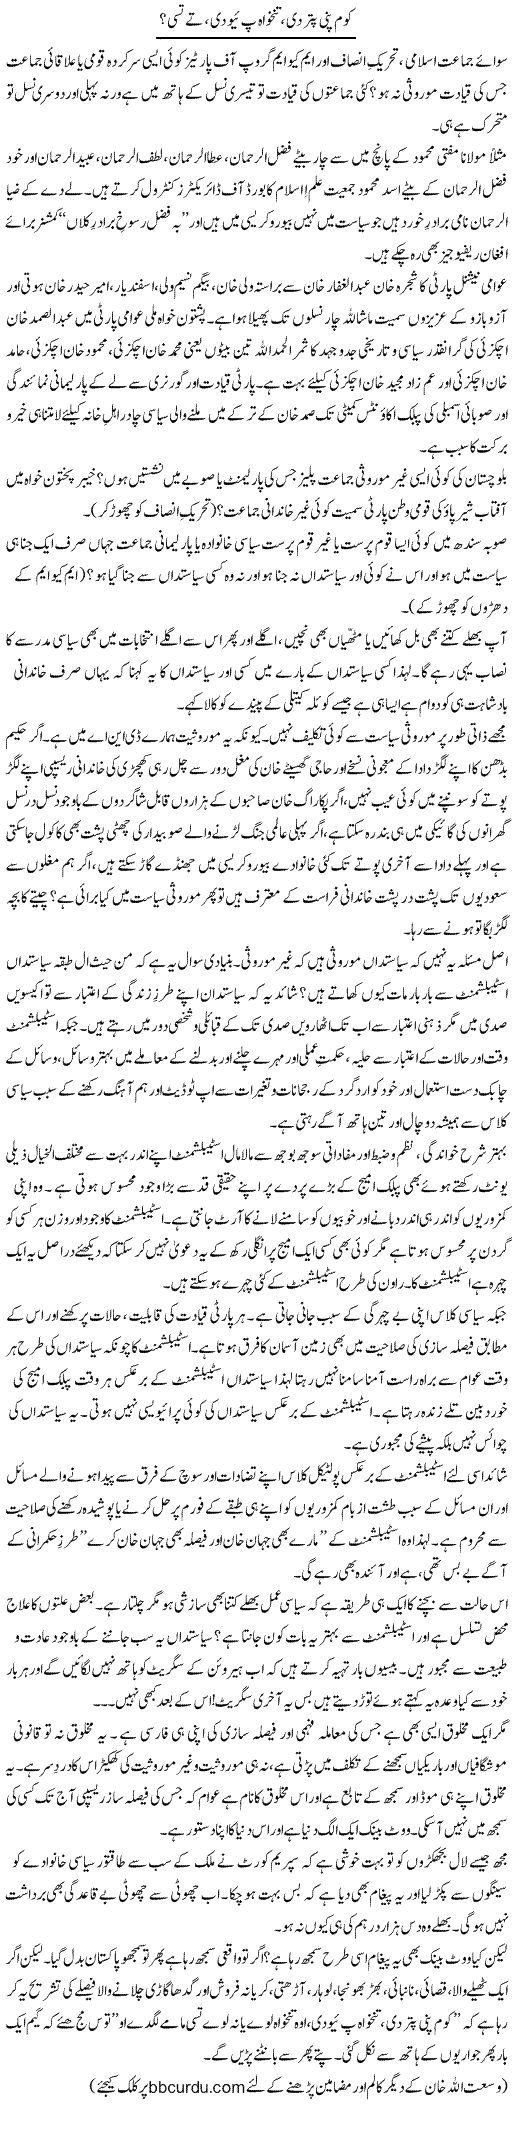 Company Puttar Di, Tankhwa Piyo Di, Te Tusi? | Wusat Ullah Khan | Daily Urdu Columns